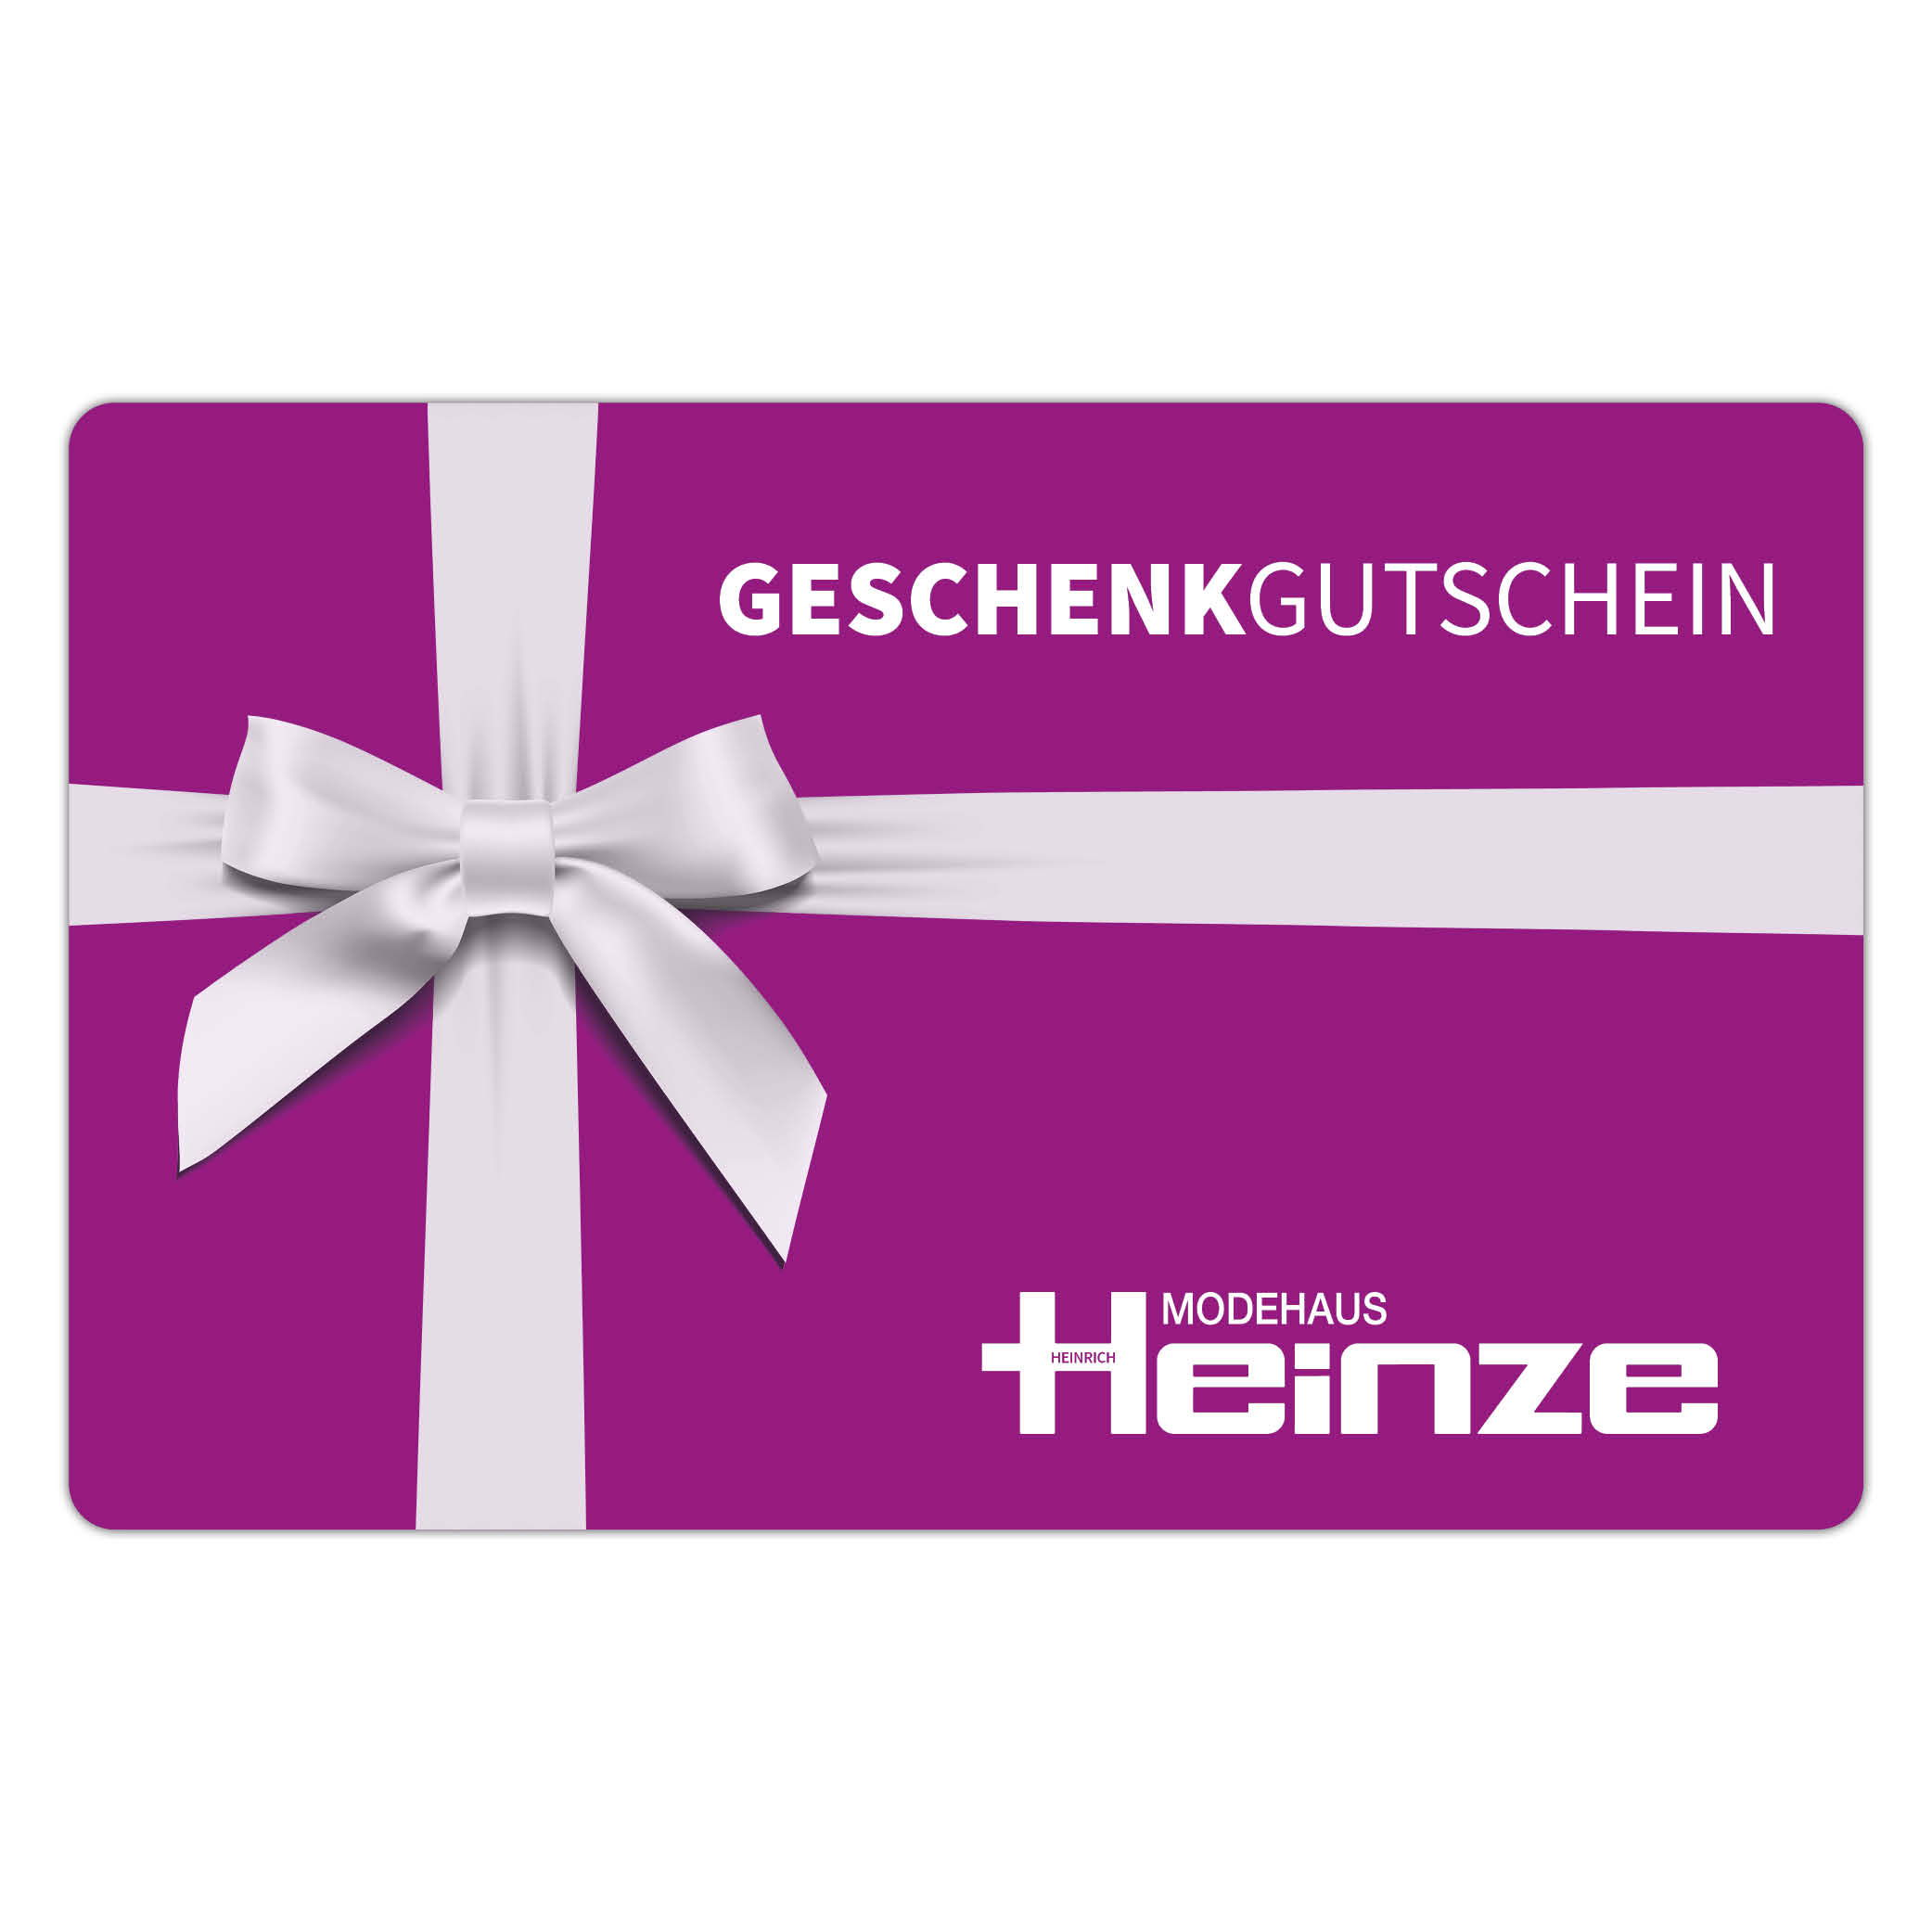 Modehaus Heinze Gutschein - 100 € Einkaufswert